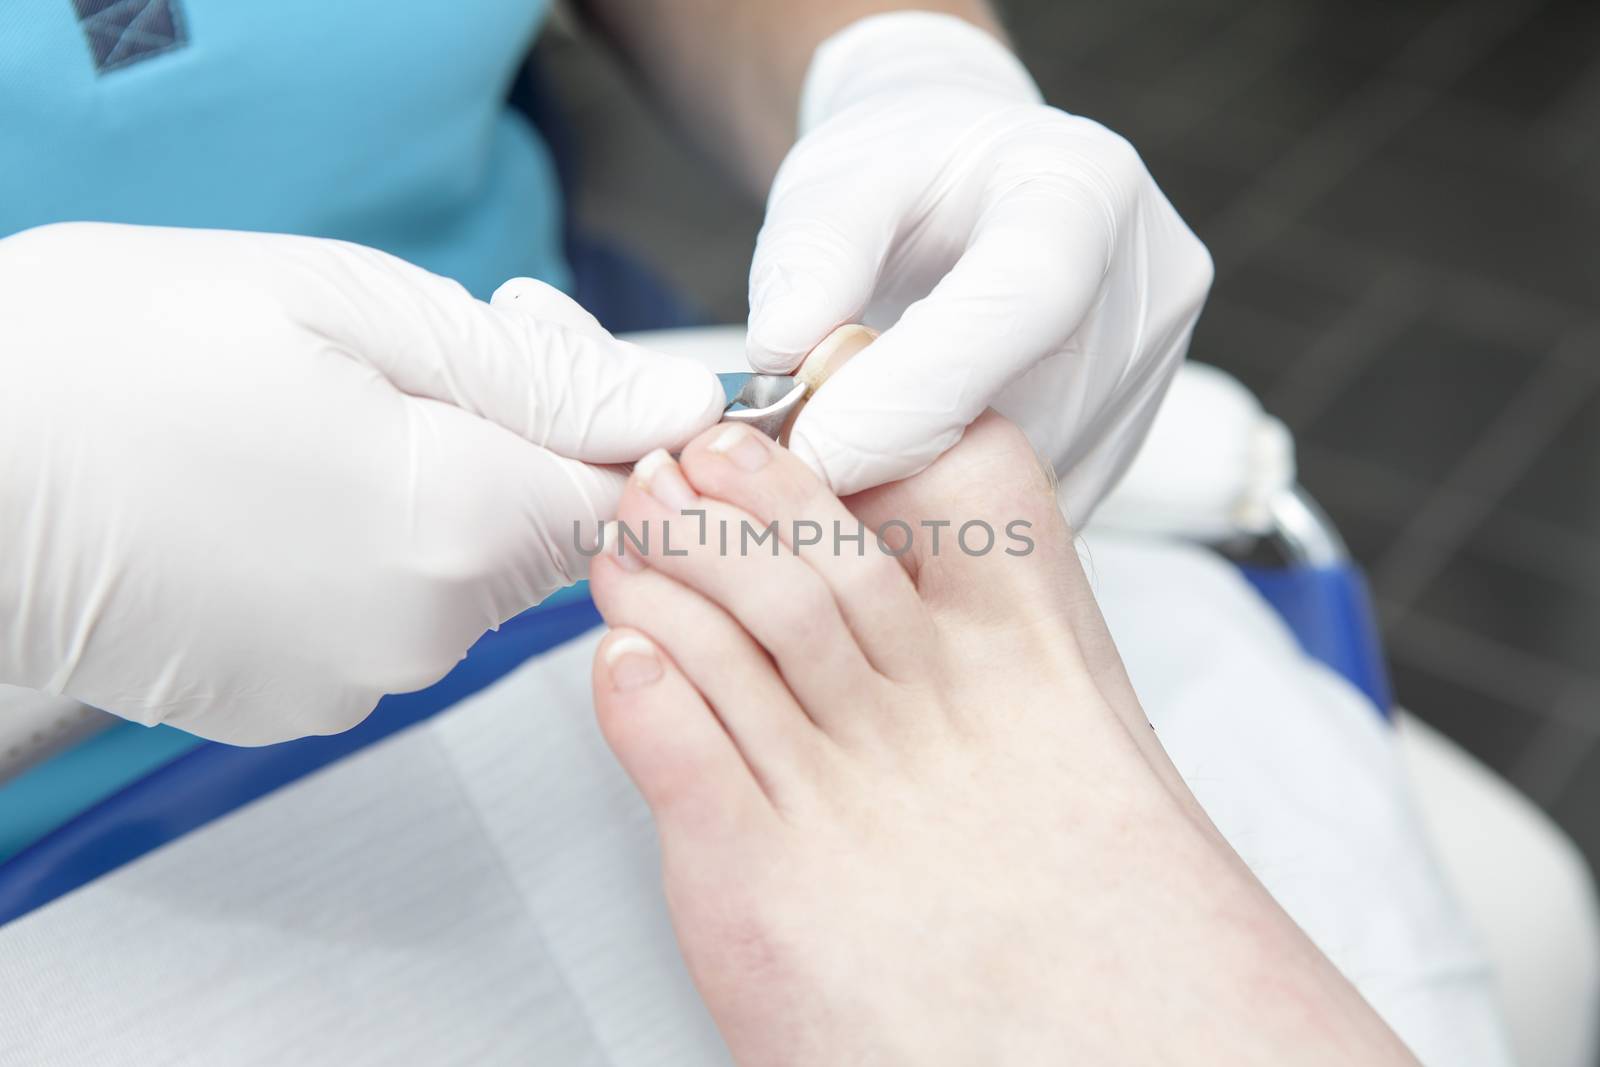 Cutting toe nails by pedicure in closeup